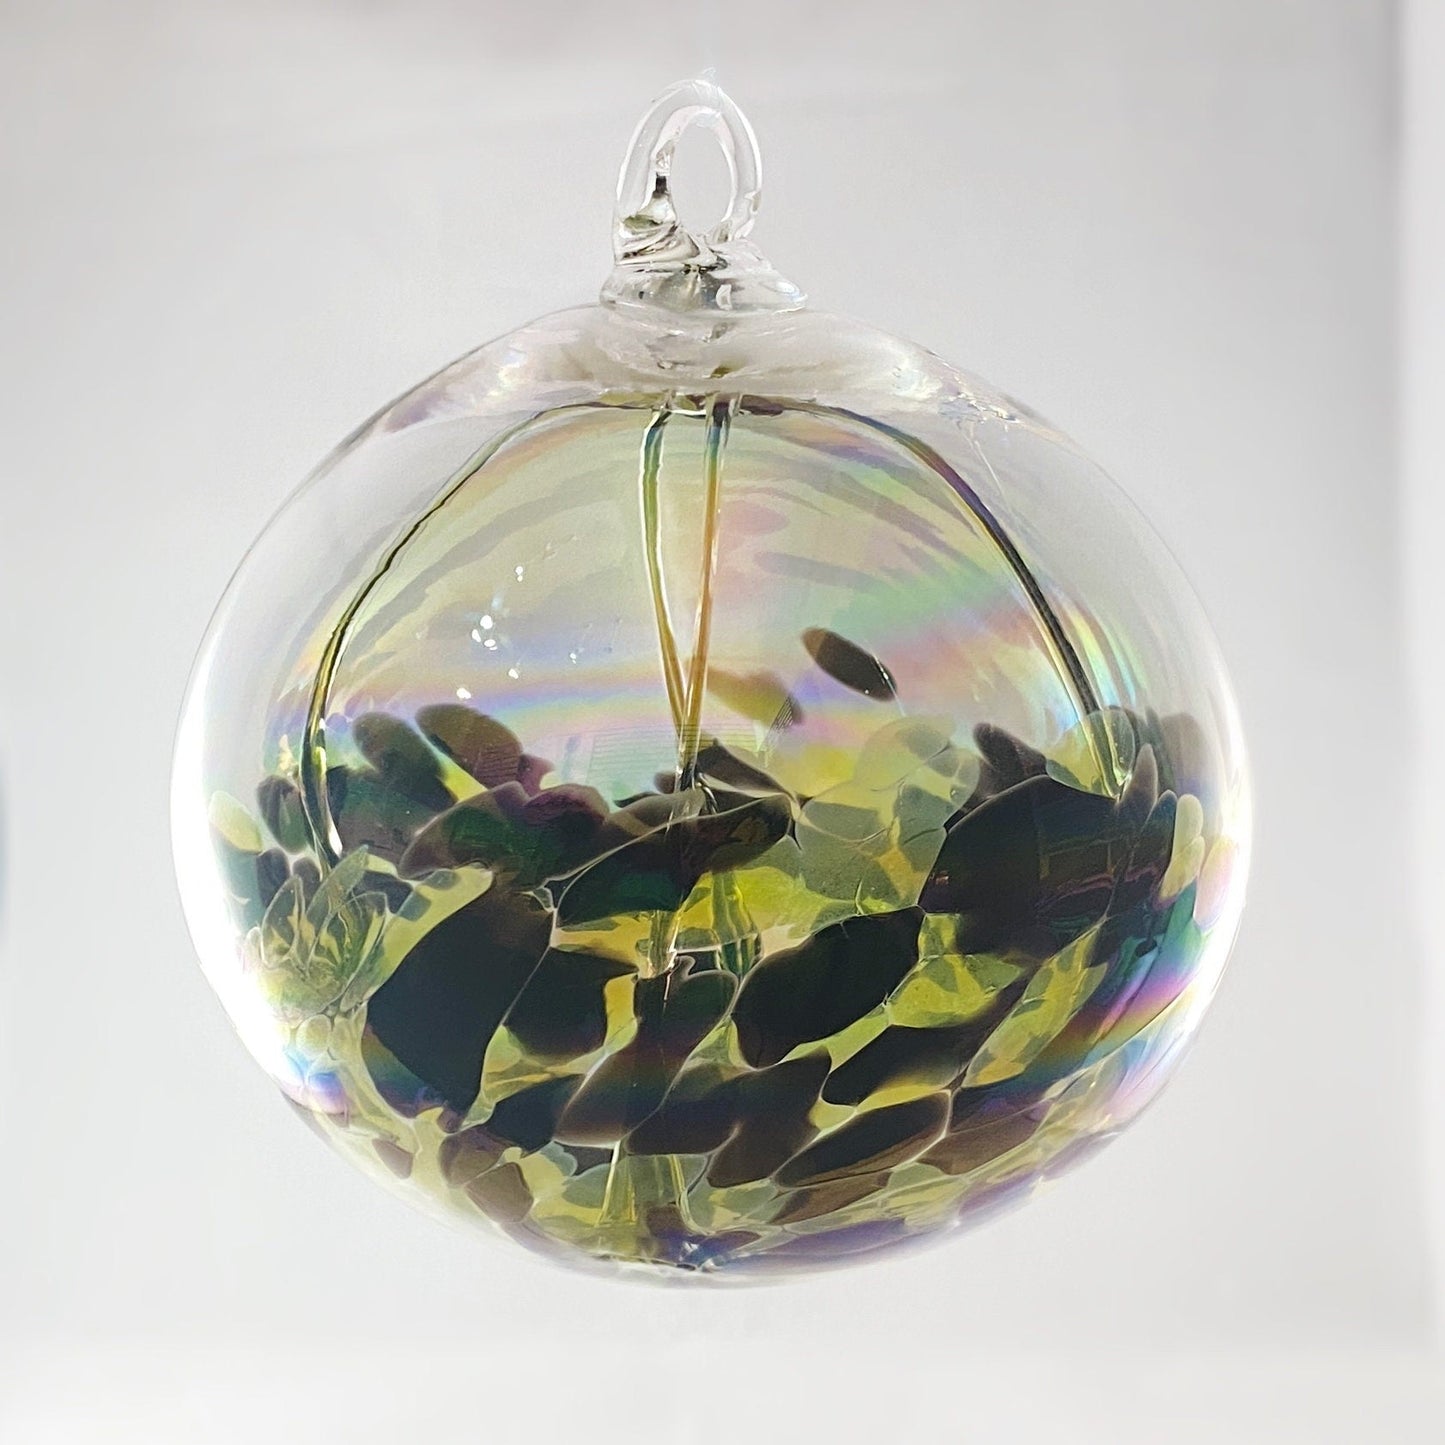 Handmade Glass Witches Ball, #3 - Yellow/Black (Iridescent)